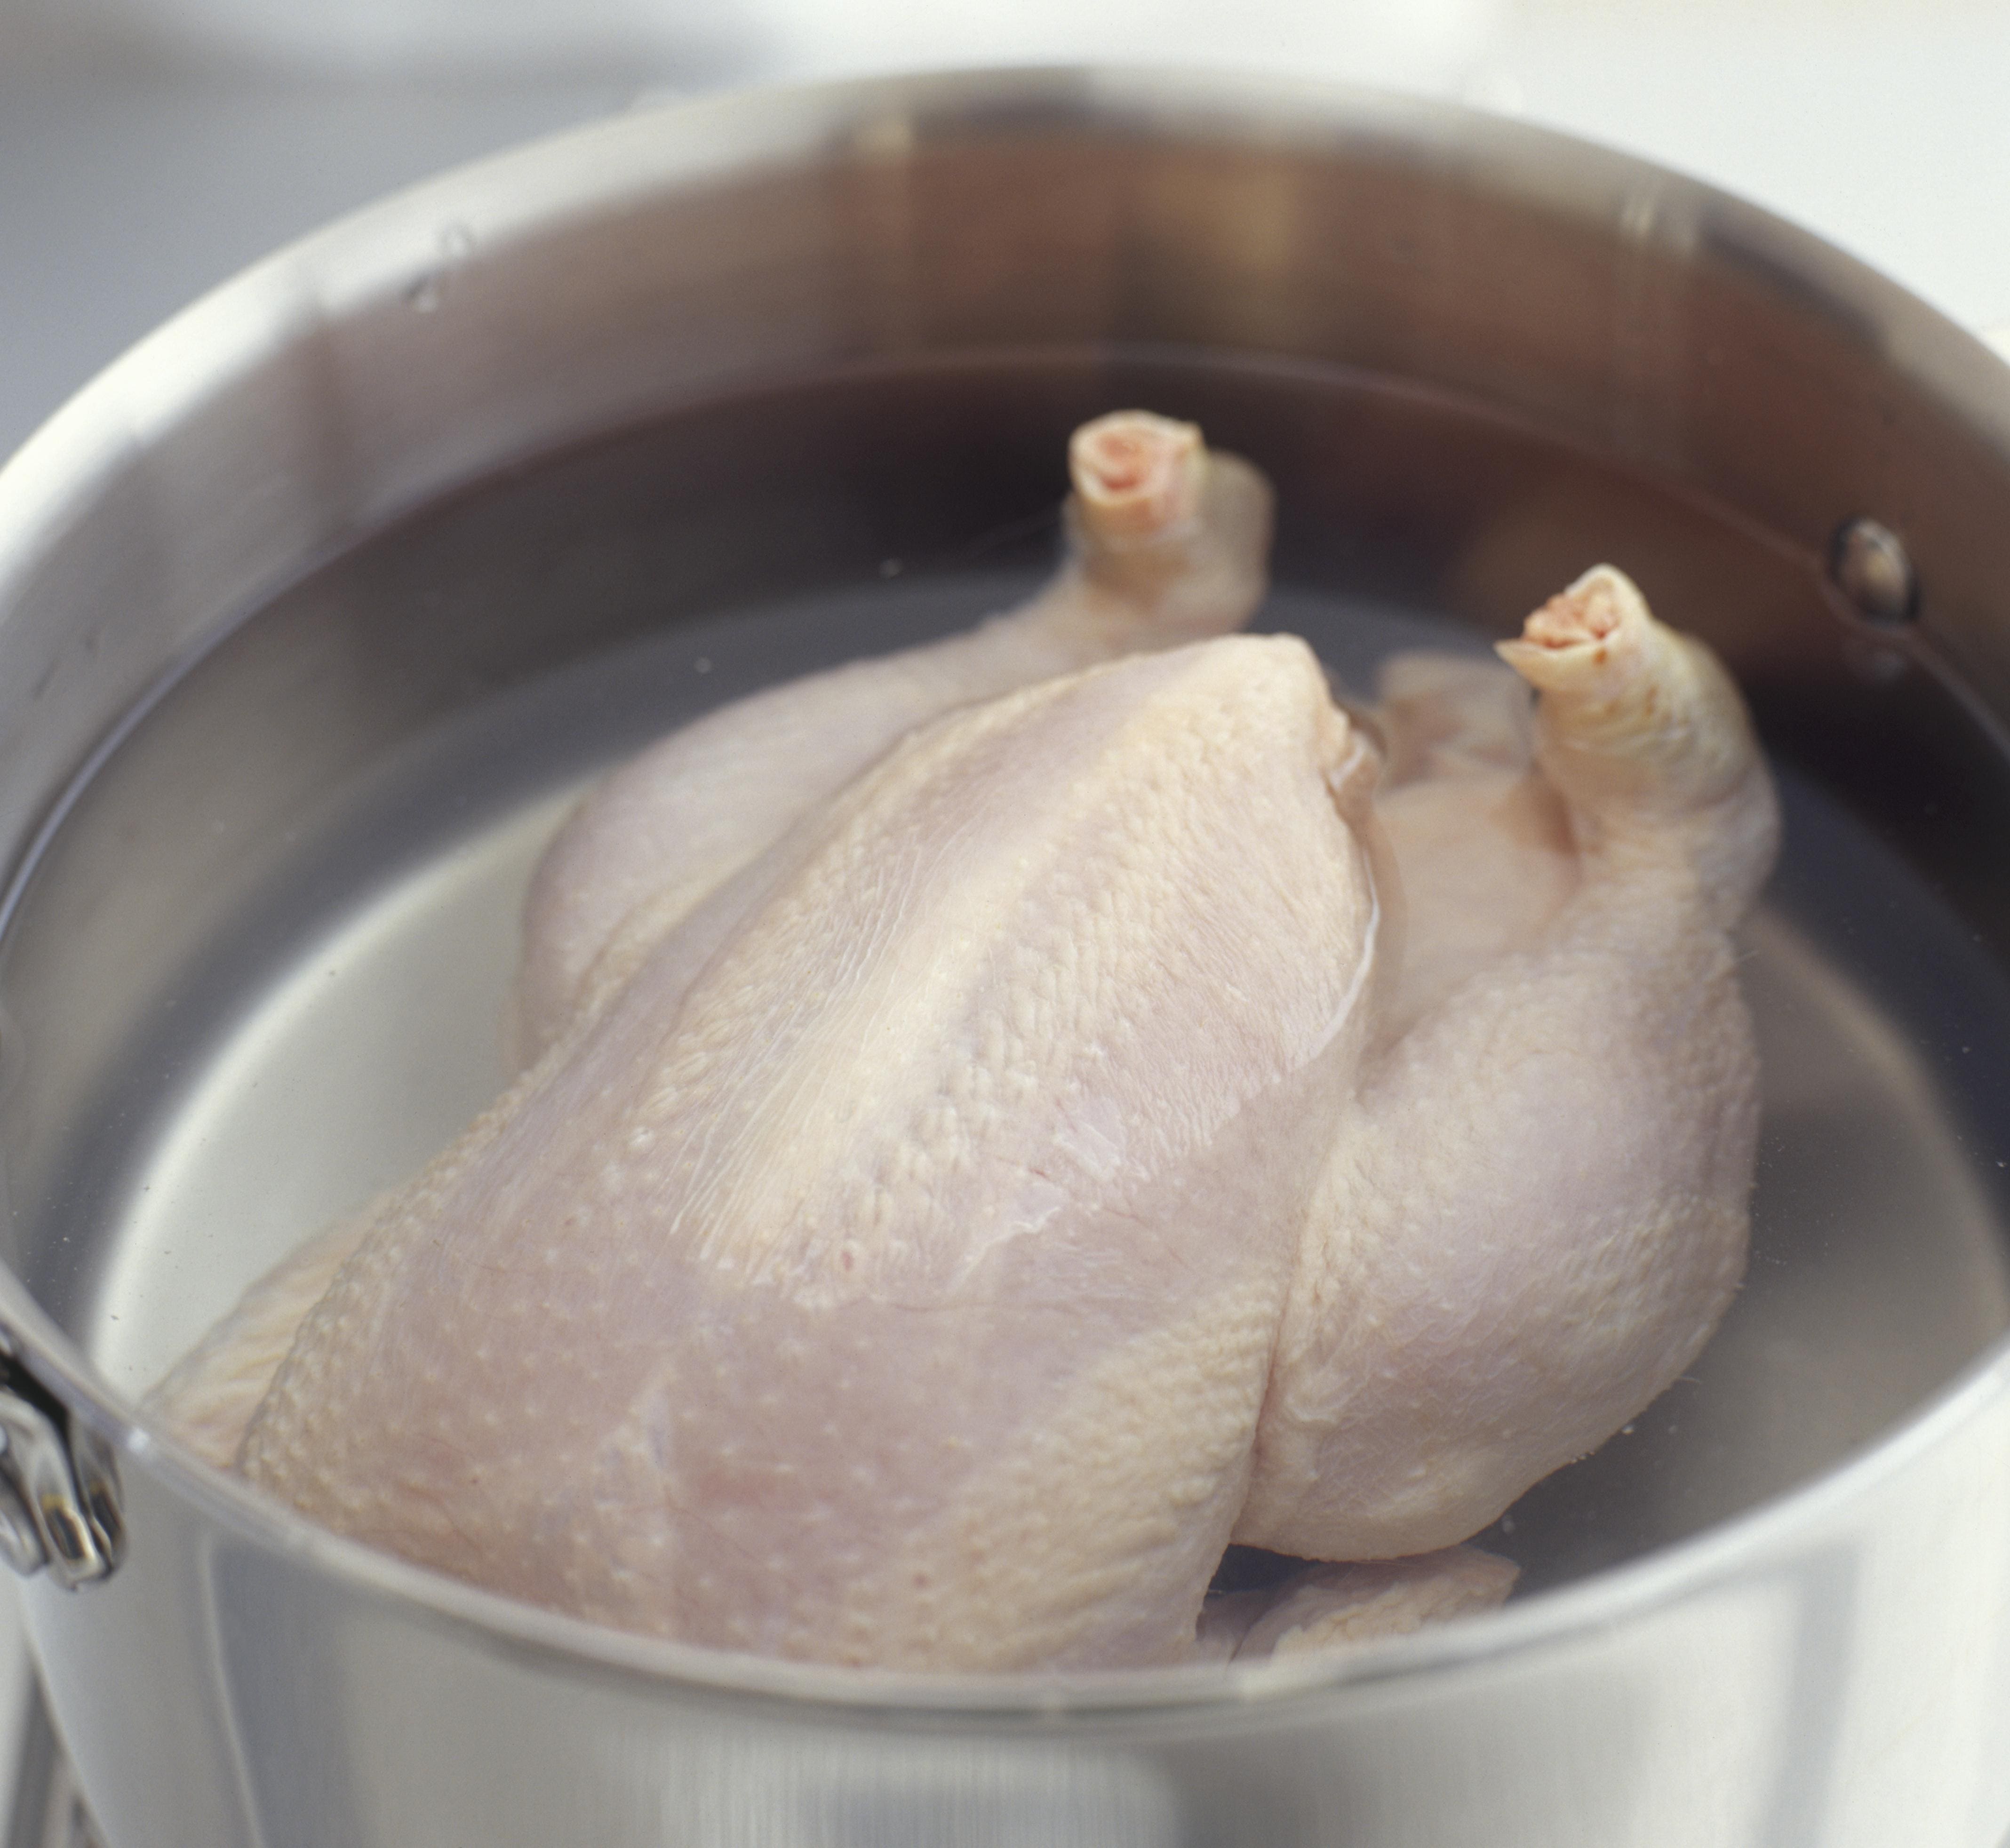  «В мясе одни микробы»: Роскачество назвало бренды филе цыпленка, которые не следует брать 